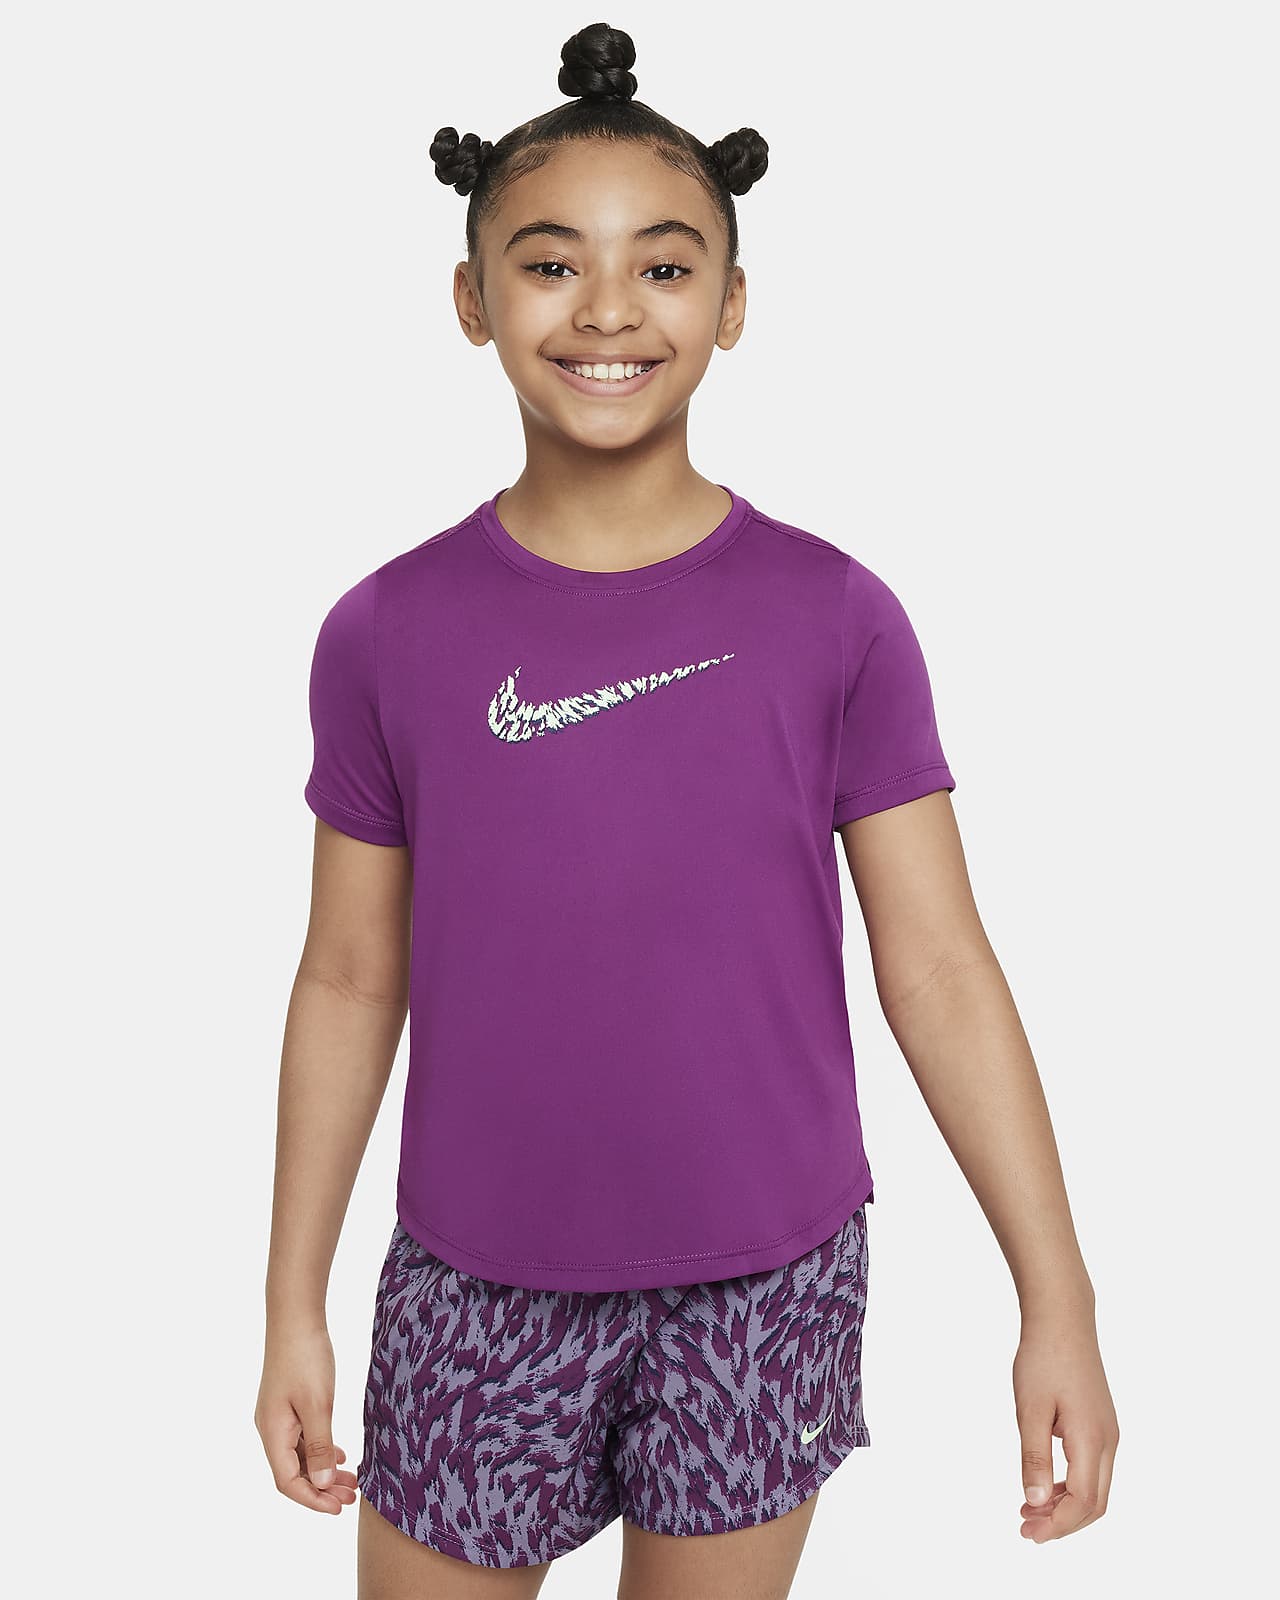 Tréninkové tričko Nike One s krátkým rukávem pro větší děti (dívky)